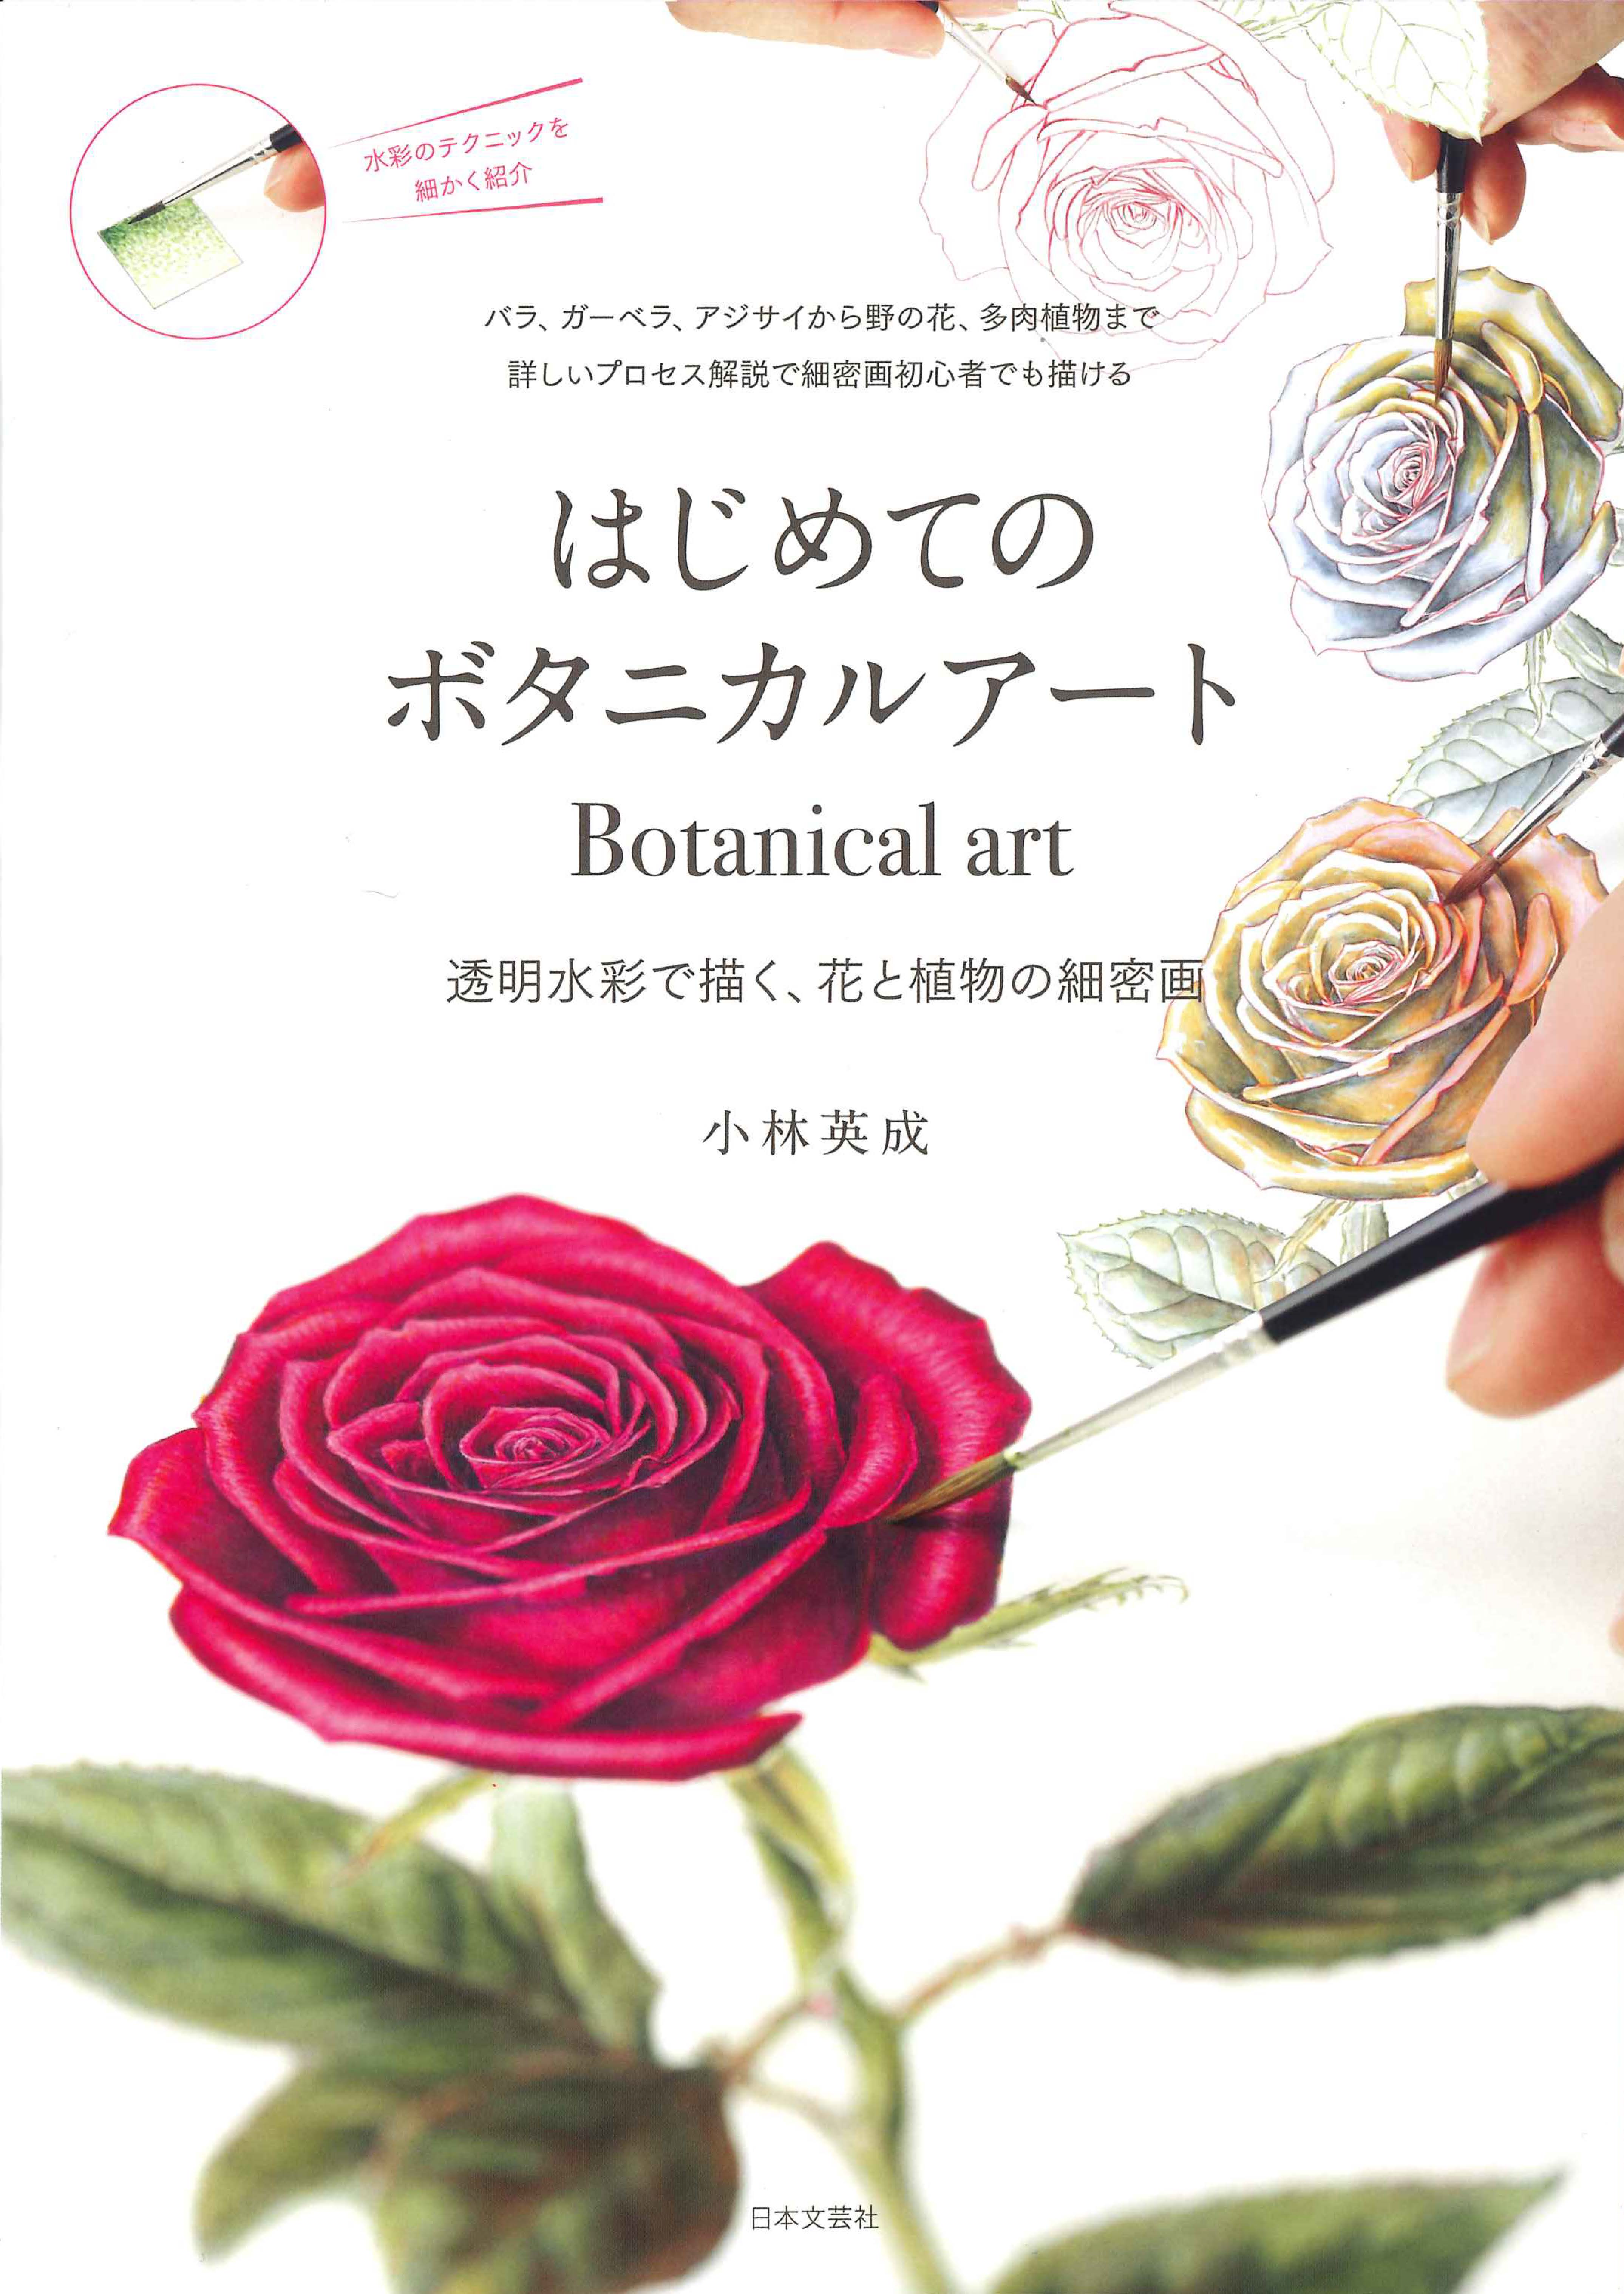 じっくり観察し 絵の具を塗り重ねることで 植物をリアルに表現 はじめてのボタニカルアート 発売 株式会社日本文芸社のプレスリリース